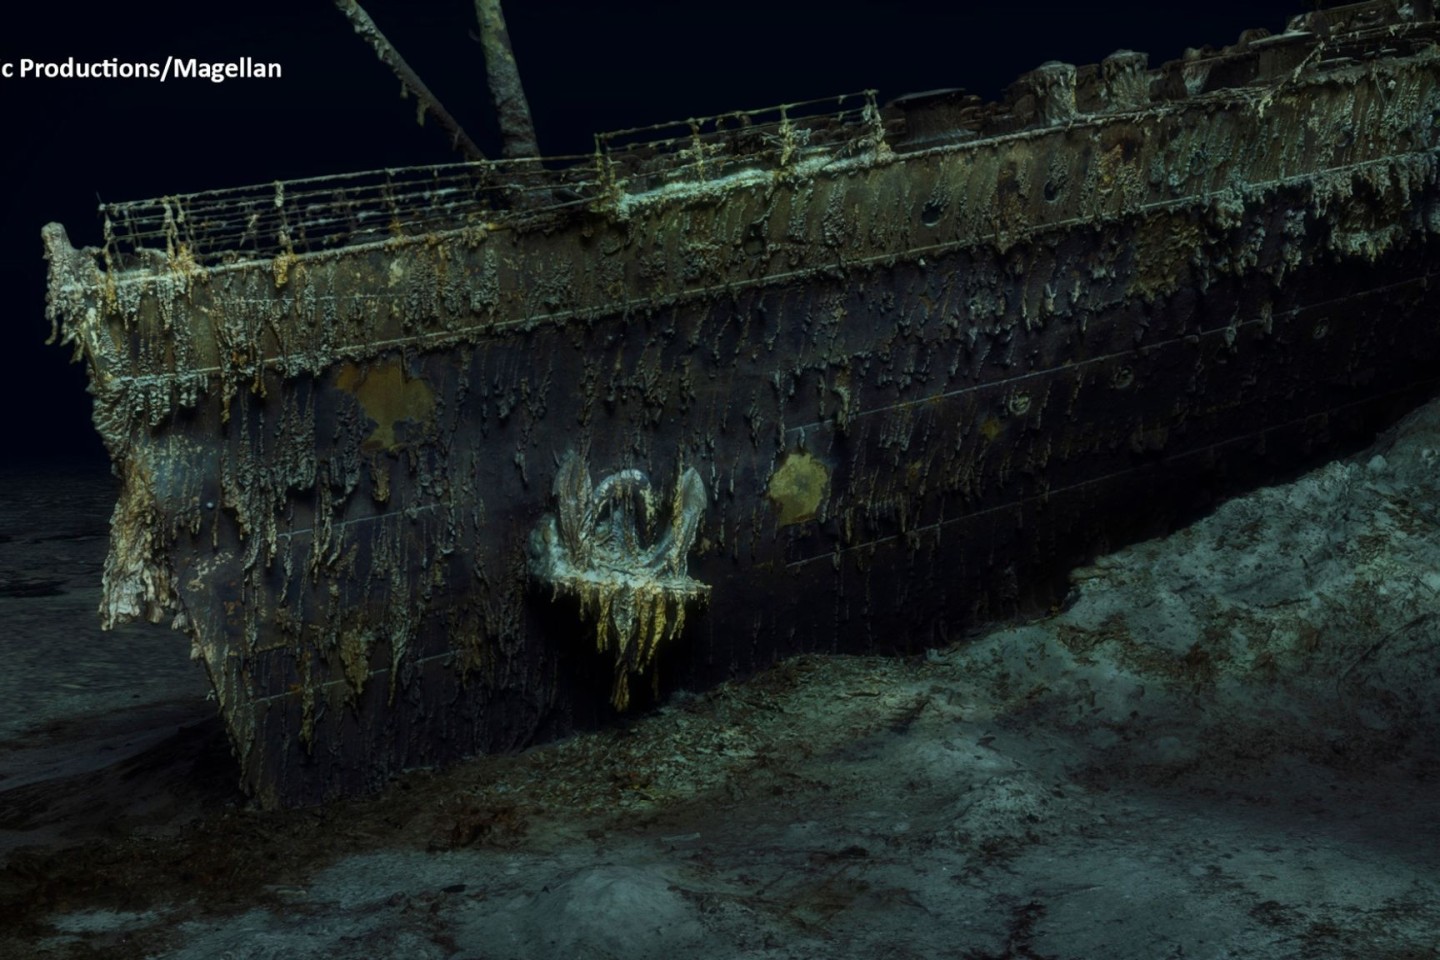 Der Bug der Titanic in knapp 4000 Metern Tiefe auf dem Grund des Atlantiks.